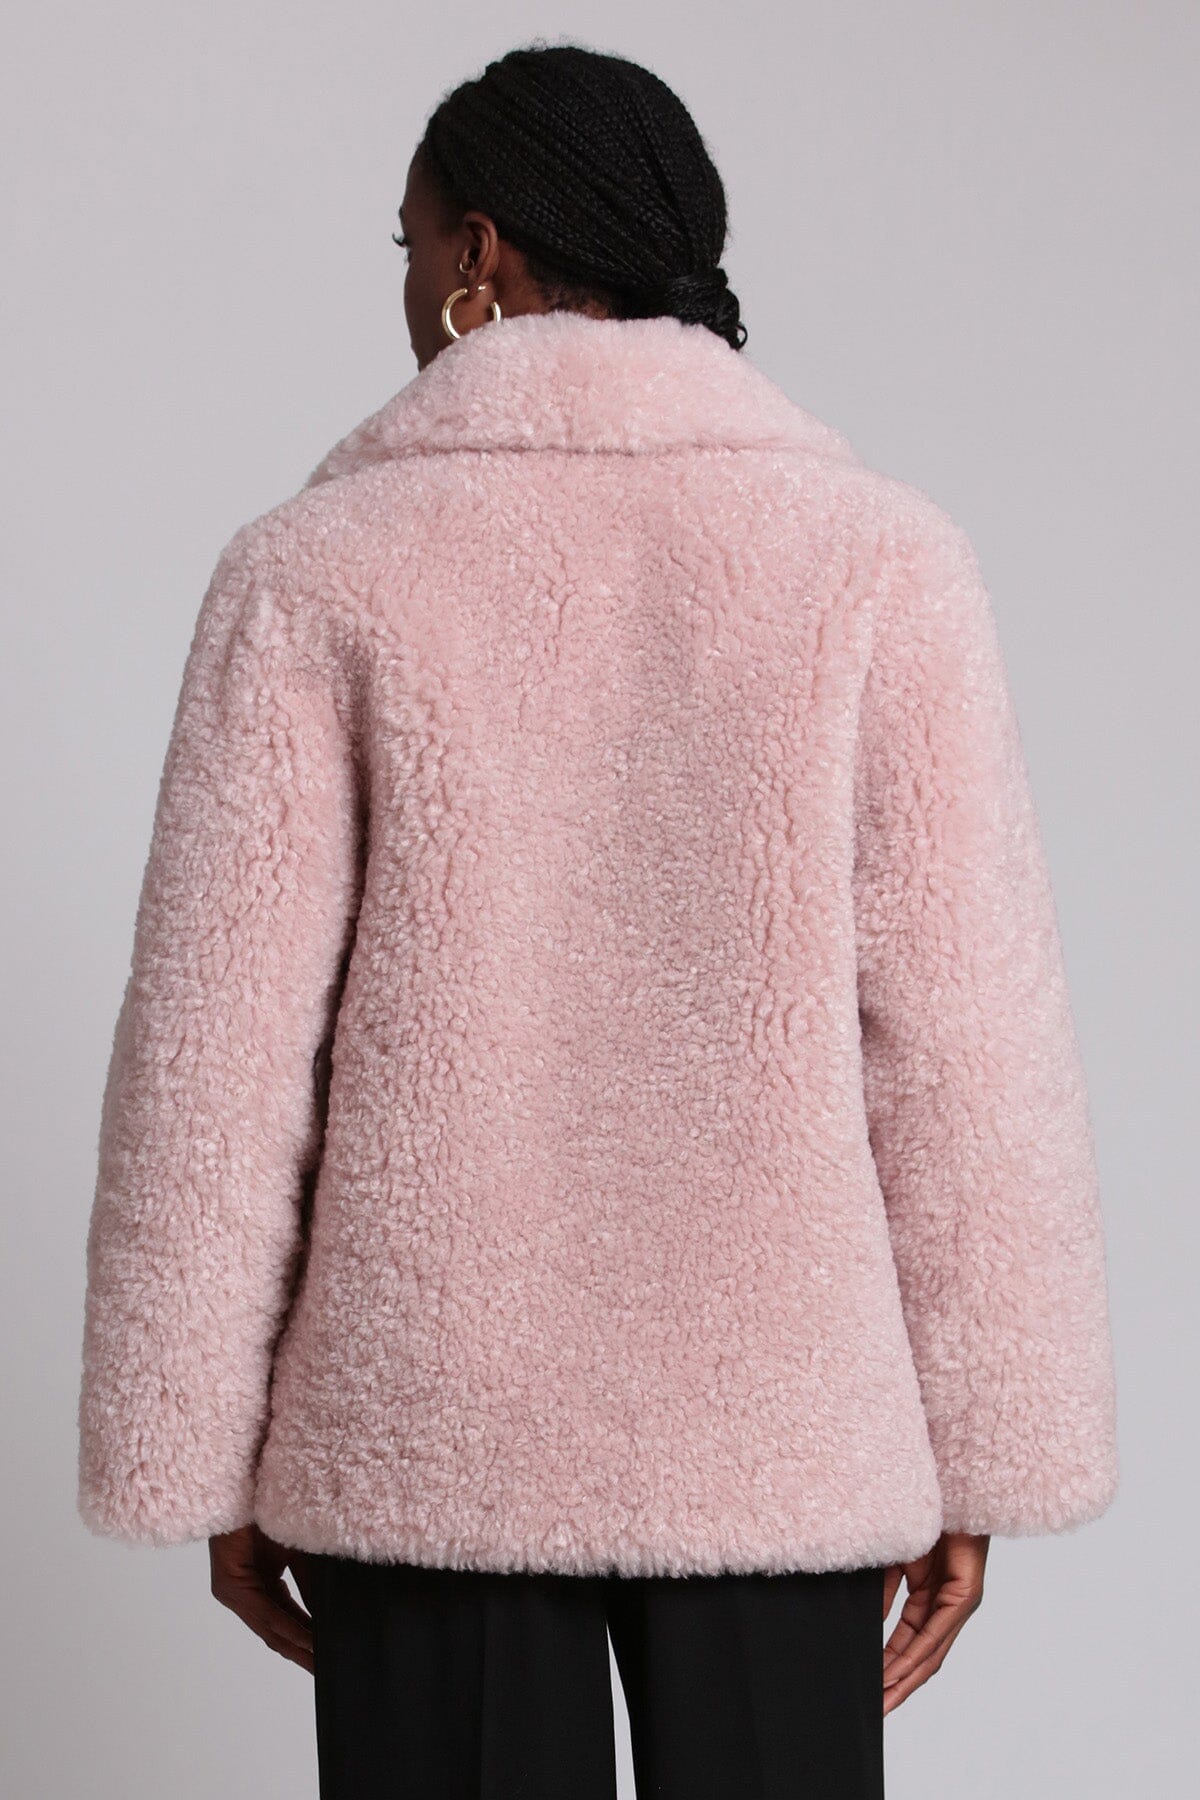 Light pink teddy faux fur notch collar coat jacket - figure flattering cute cozy coats jackets for women